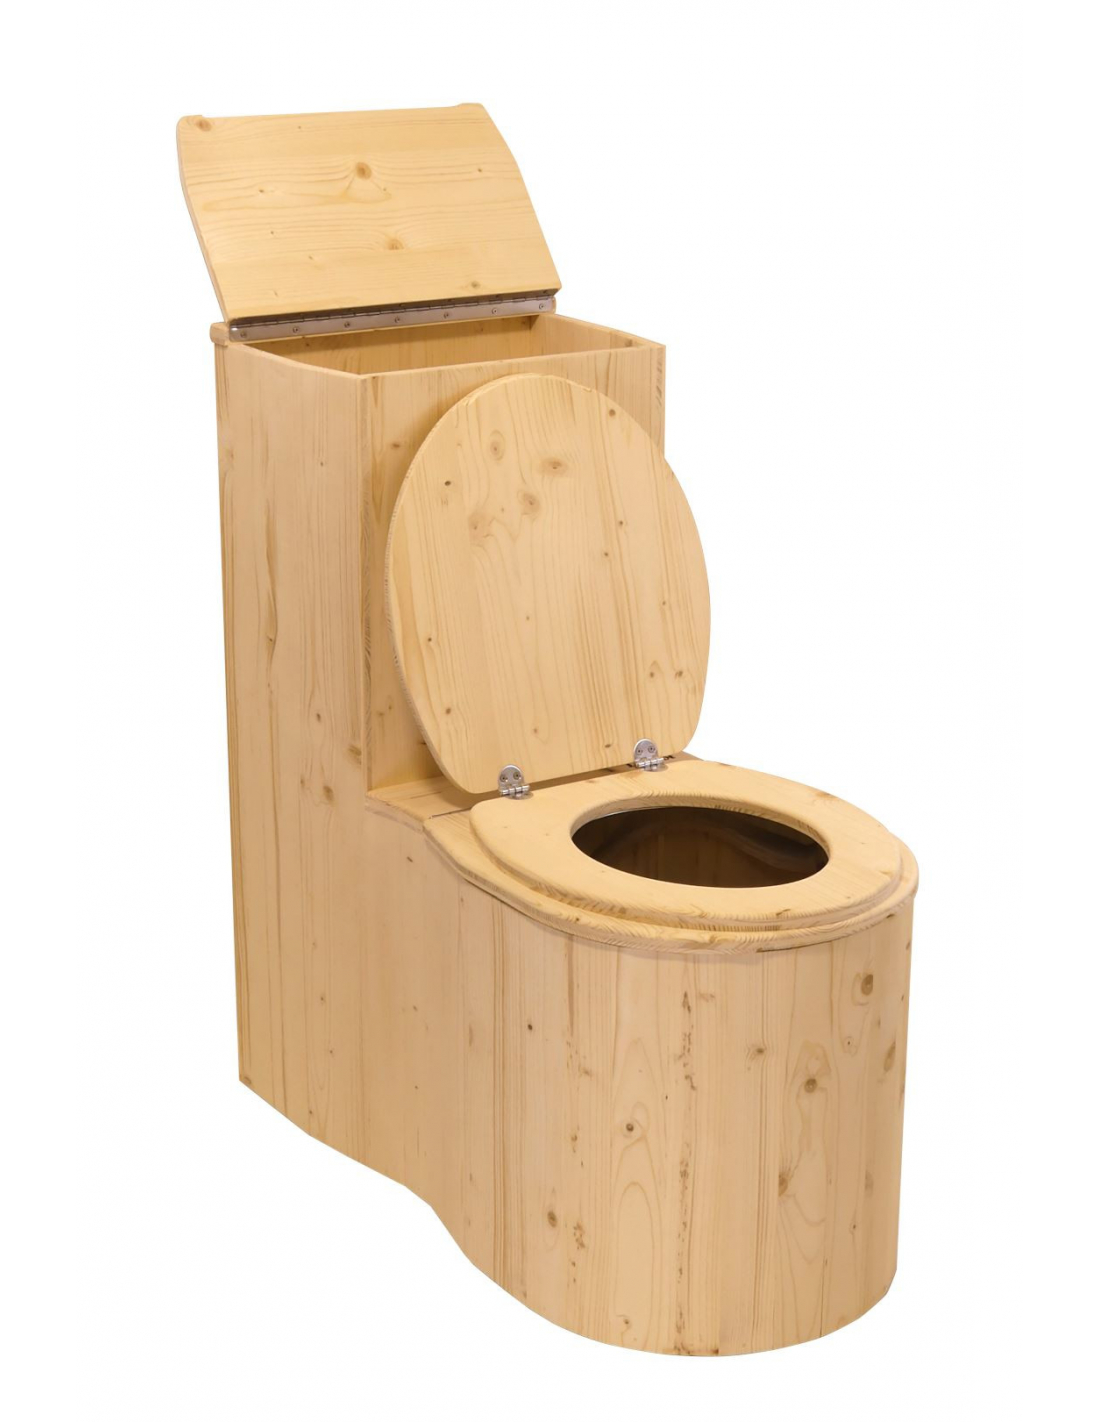 Le Cagaròl Douglas - Toilette sèche LECOPOT